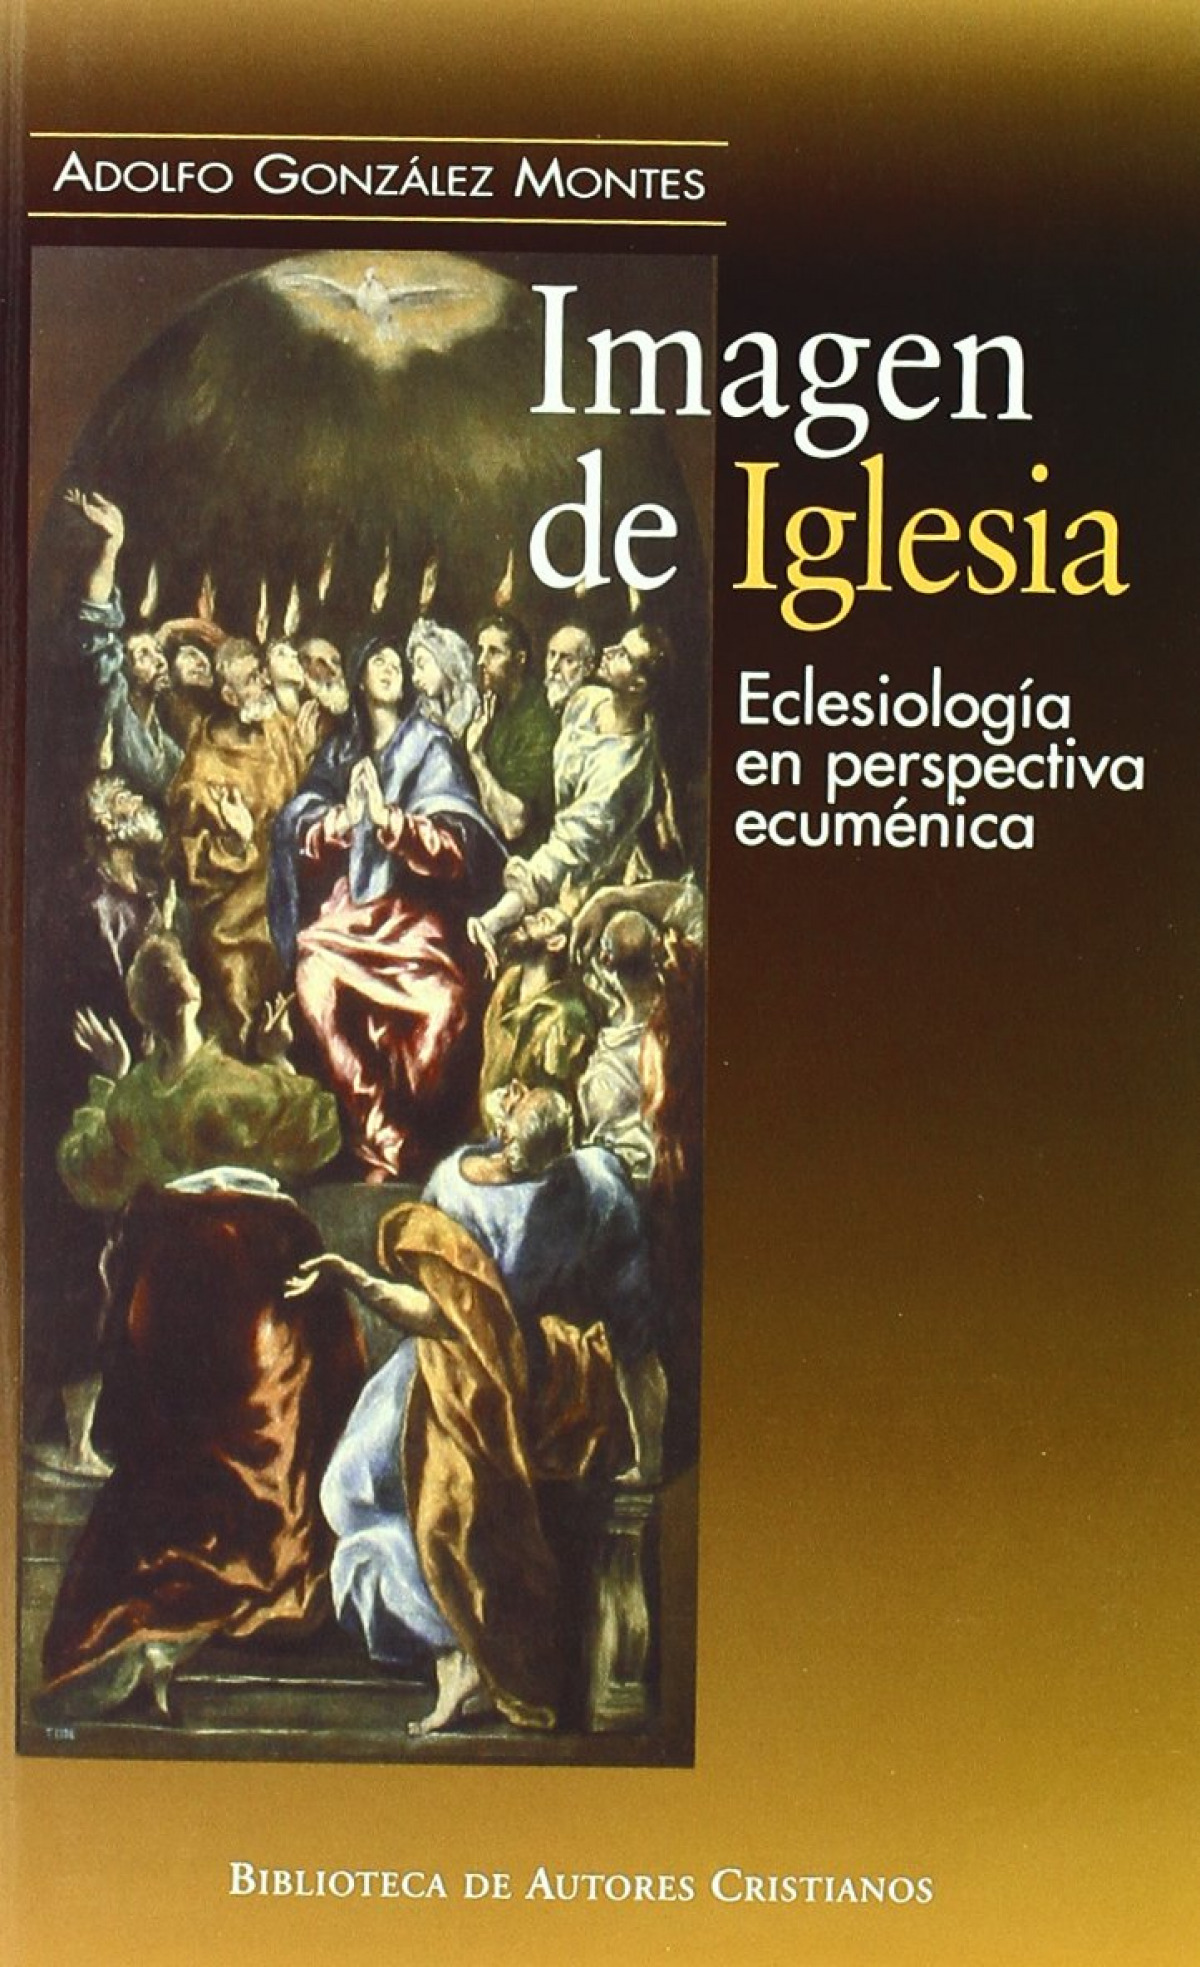 Imagen de la iglesia eclesiología en perspectiva ecuménica. - González Montes, Adolfo